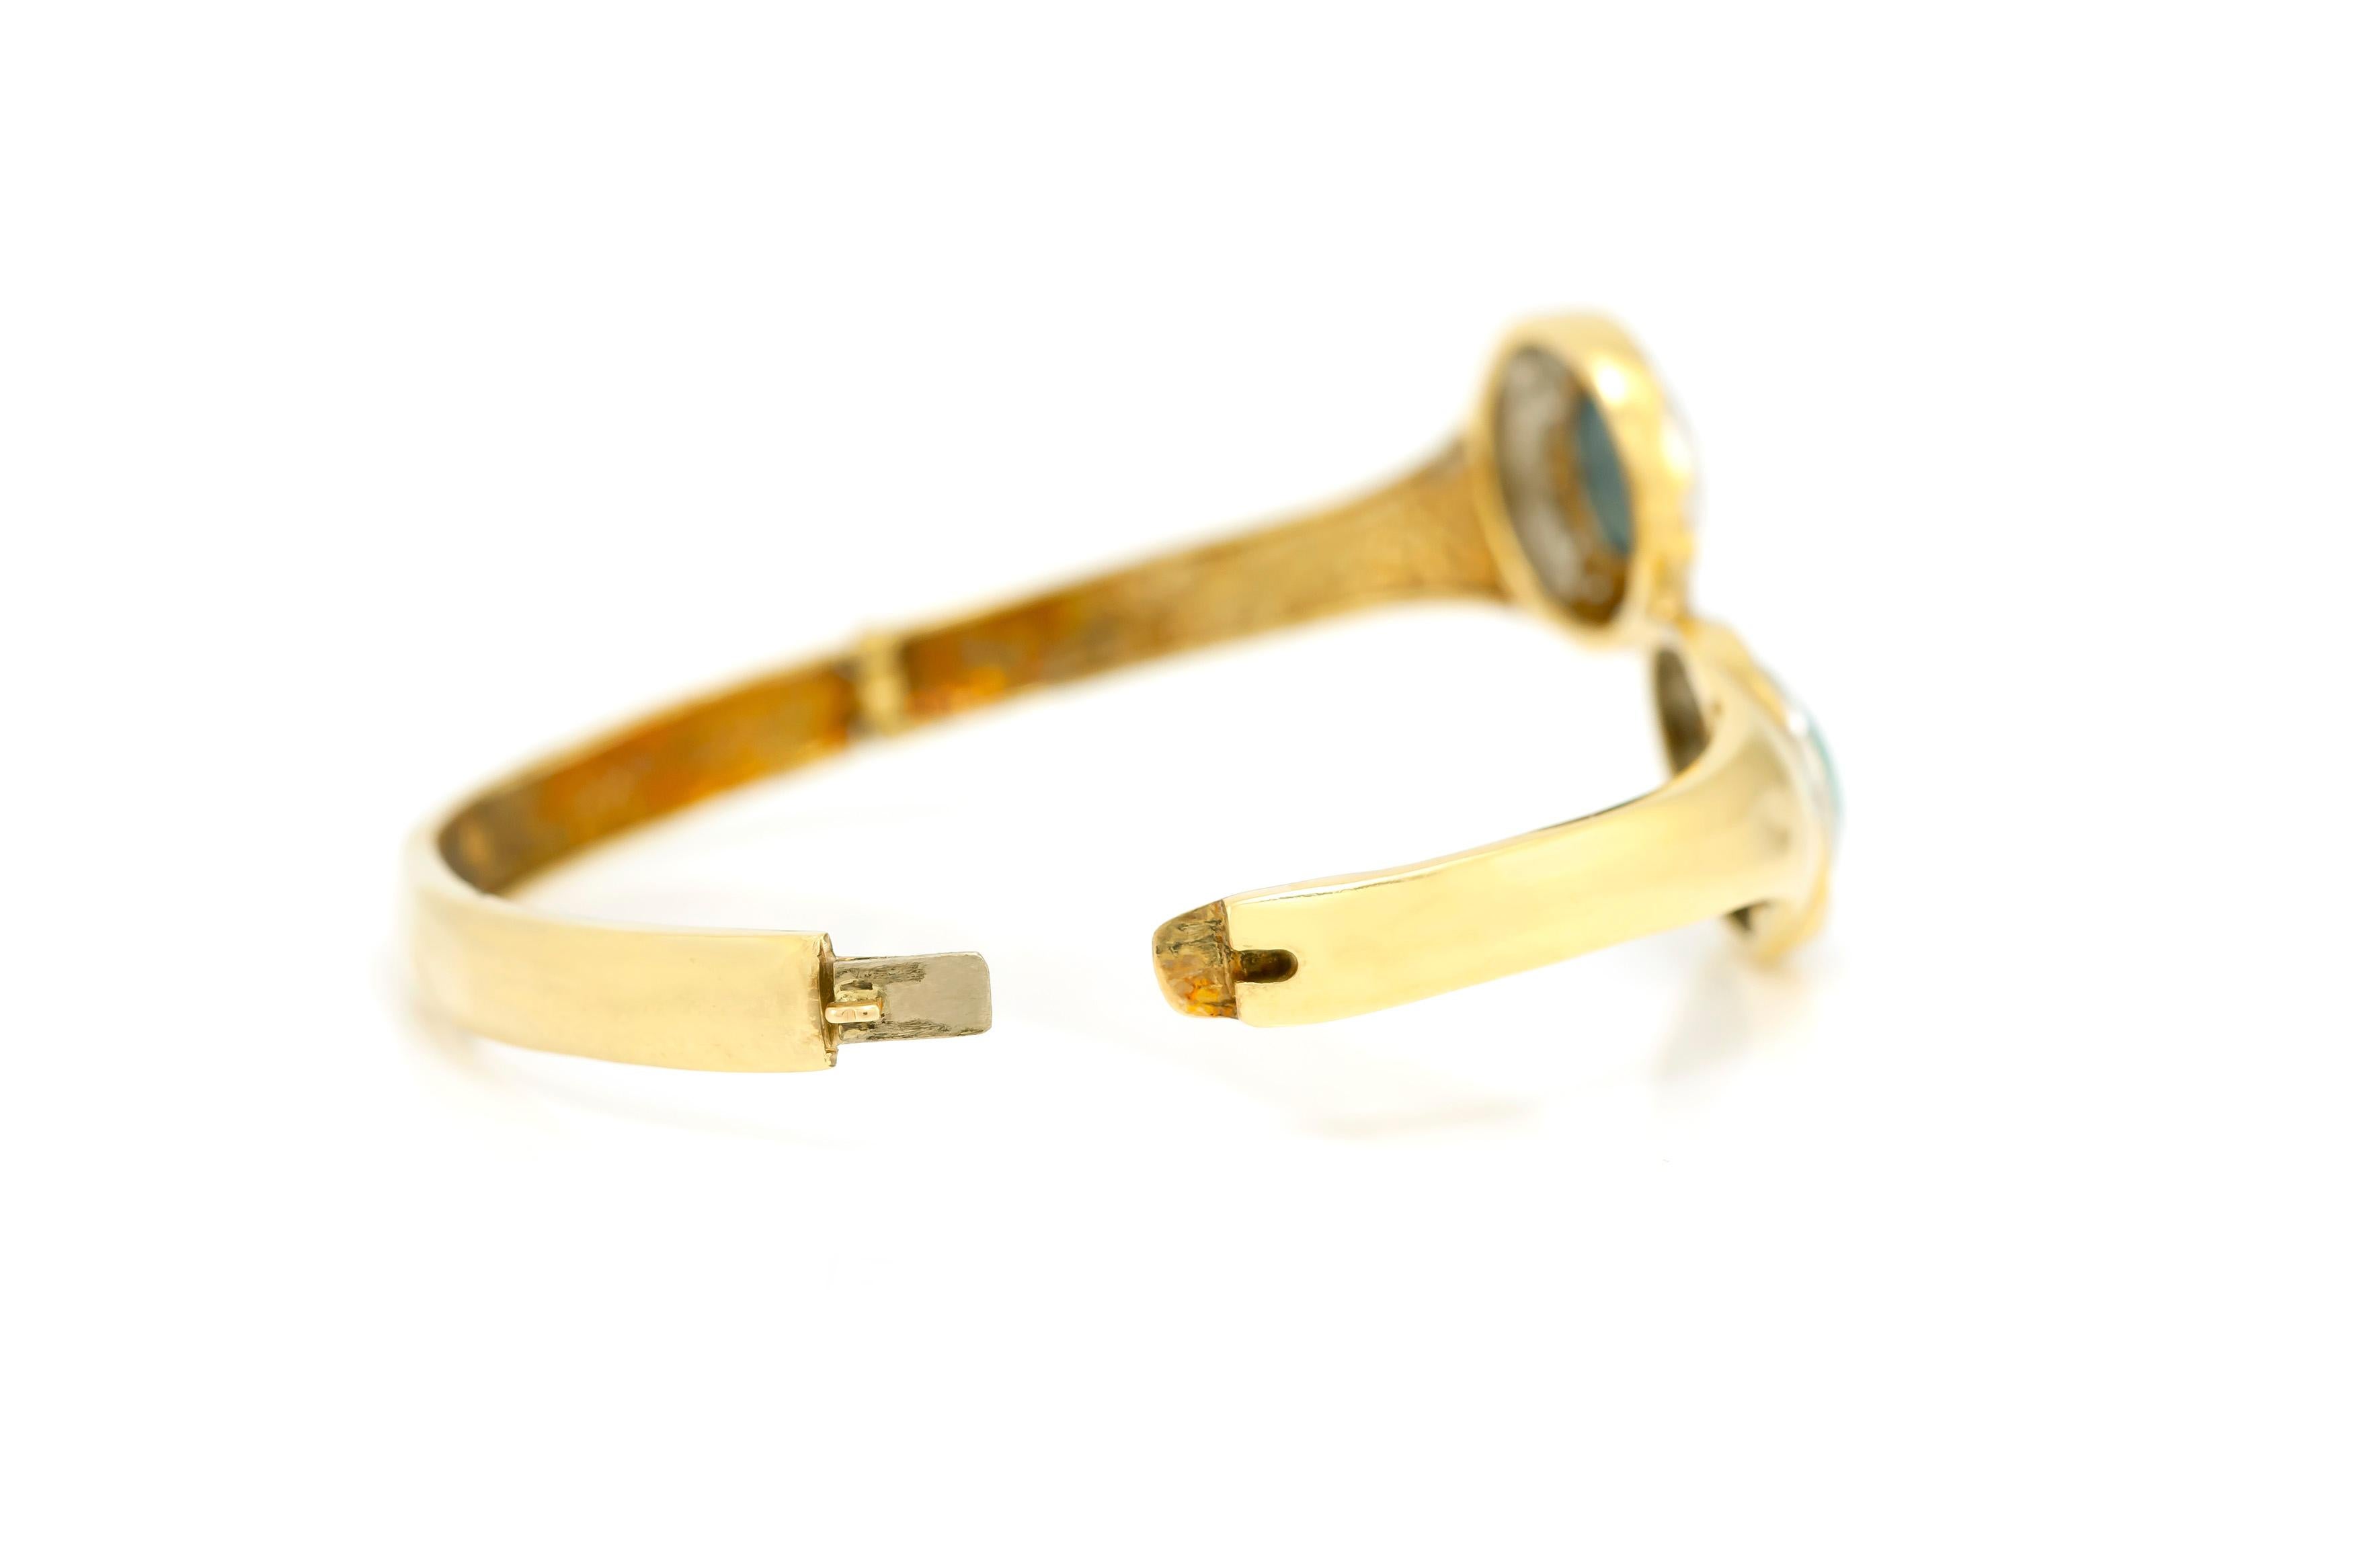 Das Armband ist fein in 14k Gelbgold mit zwei schönen Opal und Diamanten mit einem Gesamtgewicht von etwa 1,40 Karat gefertigt.
